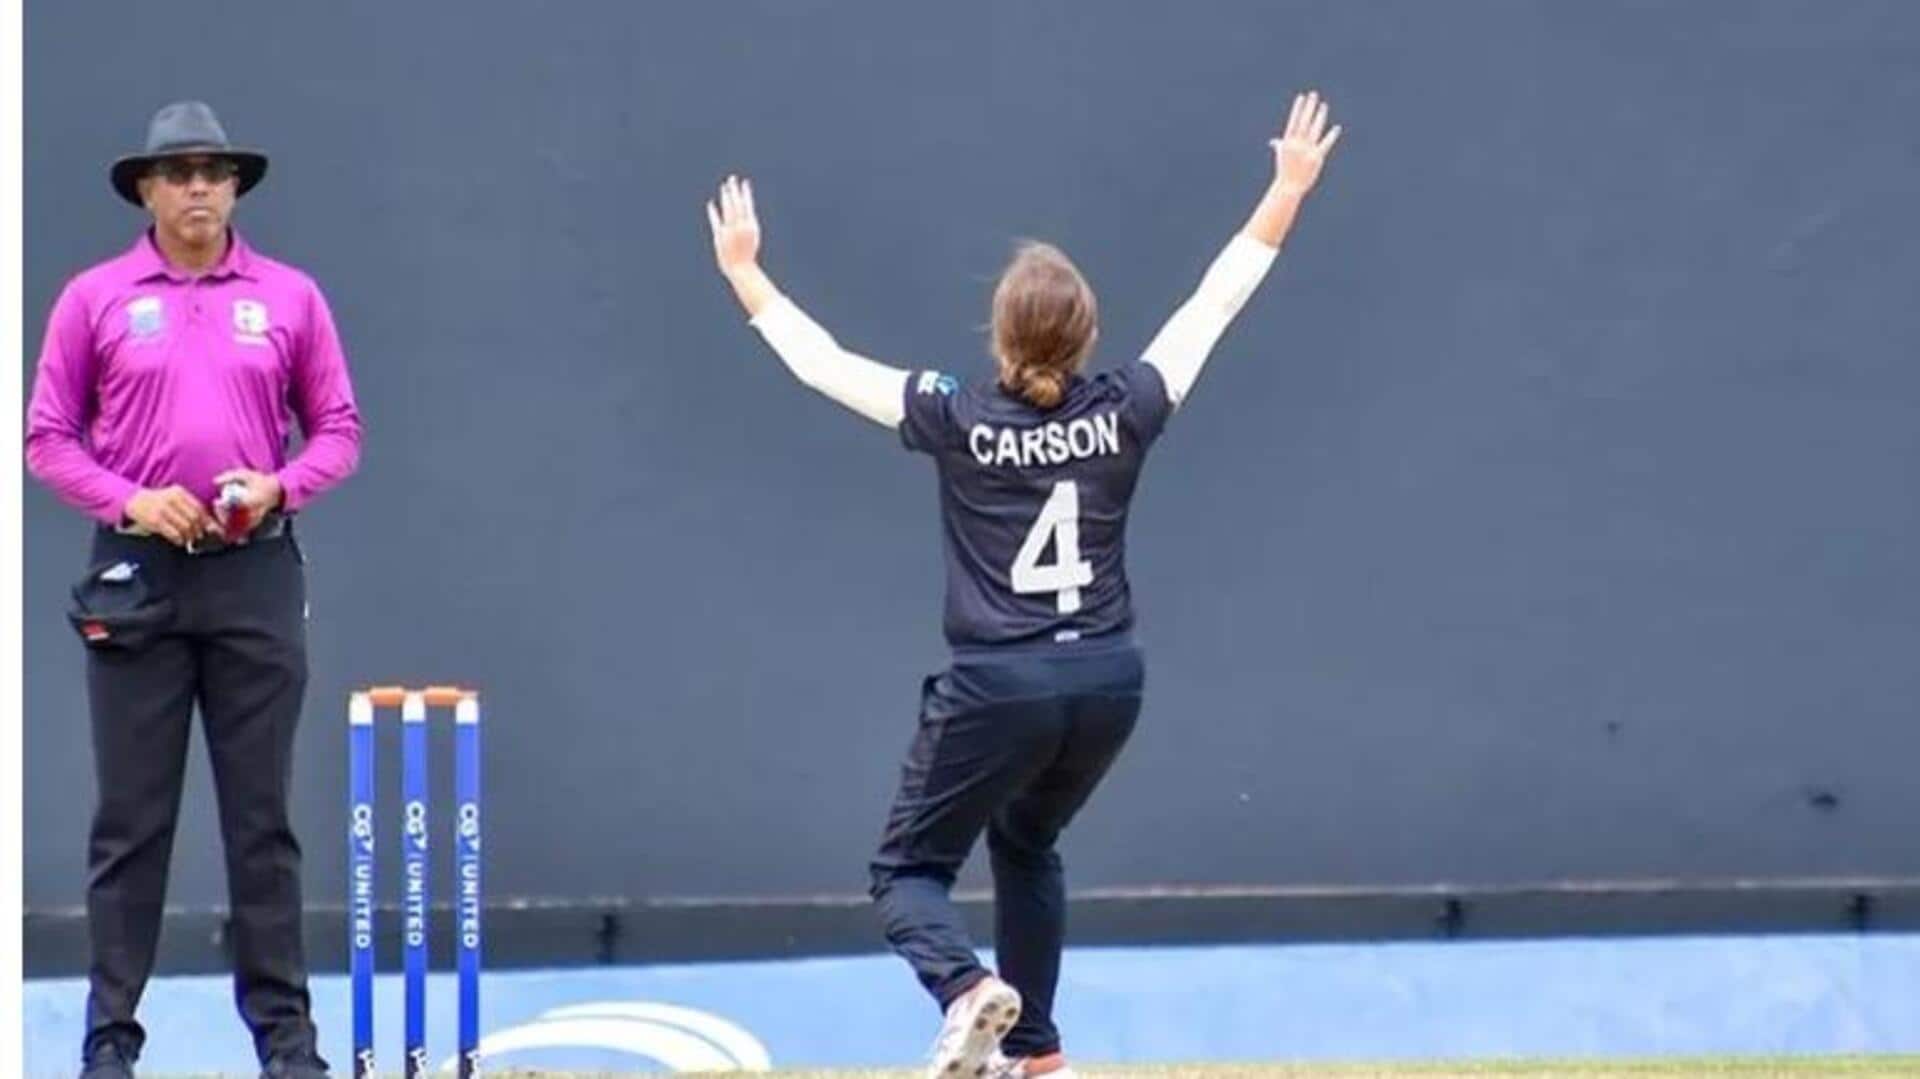 वनडे अंतरराष्ट्रीय मैच में हुई बड़ी गलती, न्यूजीलैंड की गेंदबाज ईडन कार्सन ने फेंके 11 ओवर